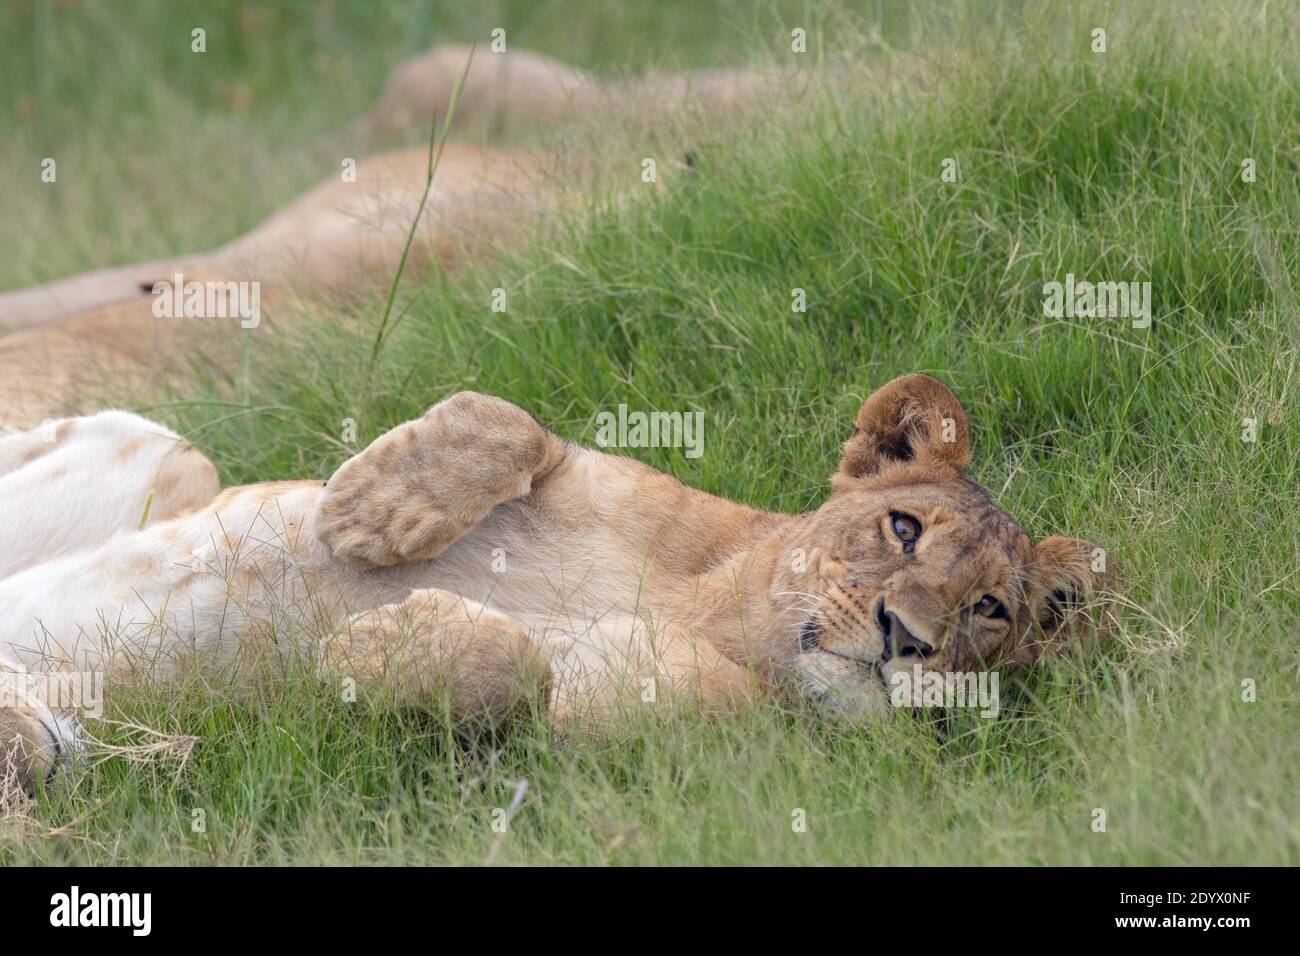 Afrikanischer Löwe (Panthera leo). Liegend, entspannt unreif, juvenil, liegend an der Flanke, inmitten der Grünlandvegetation. Größenvergleich von großen Pfoten Kopf Stockfoto